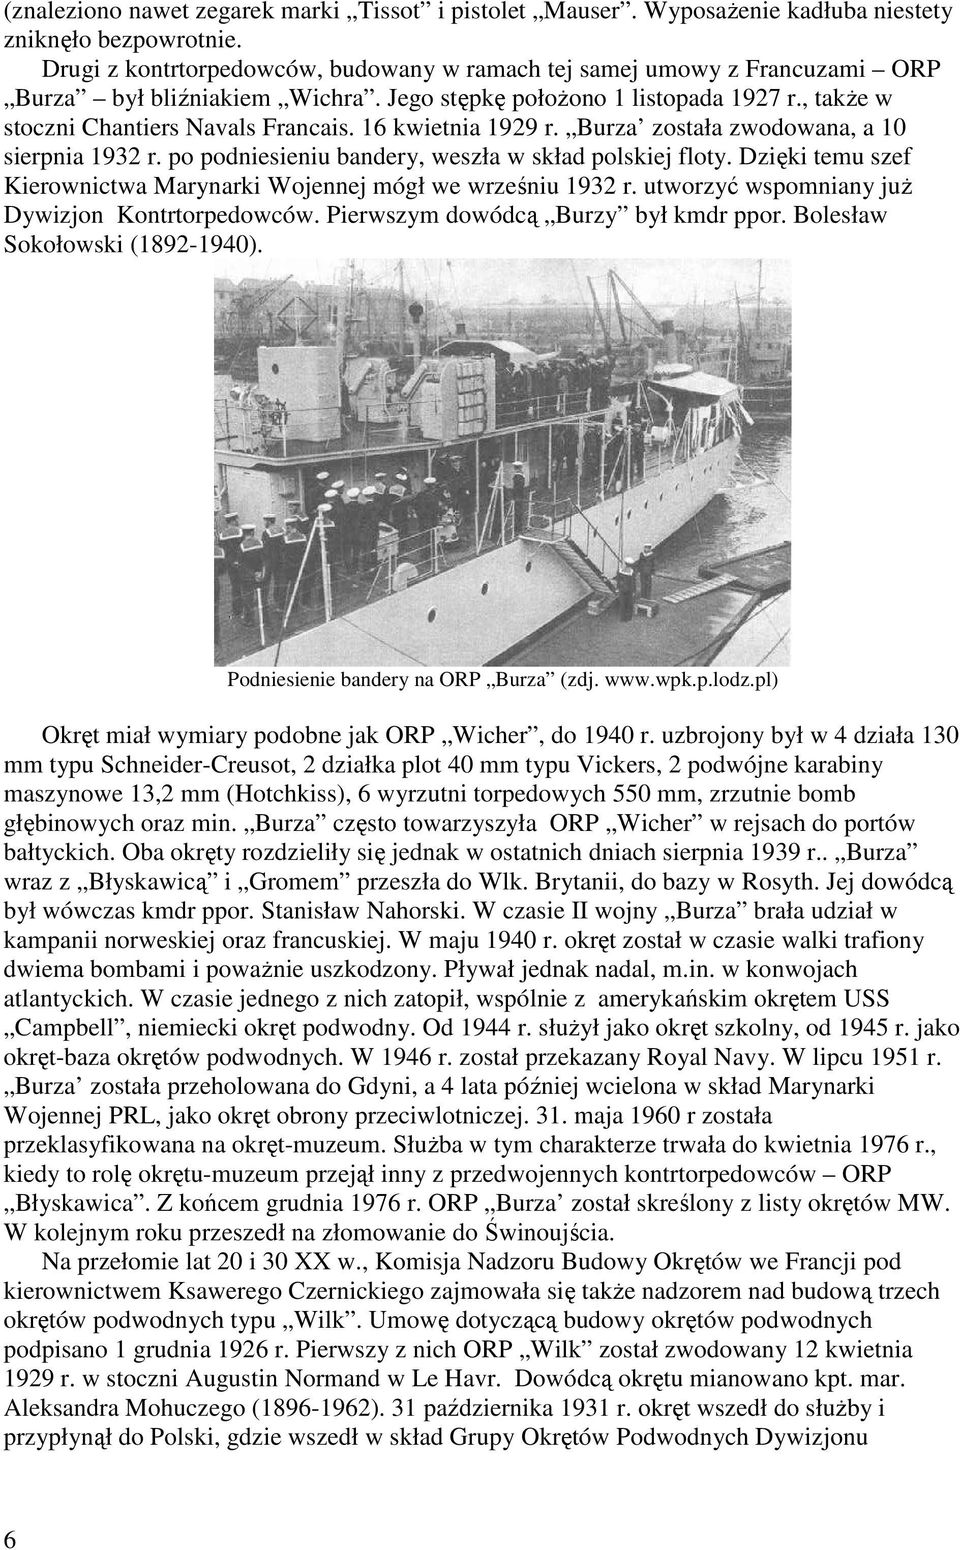 16 kwietnia 1929 r. Burza została zwodowana, a 10 sierpnia 1932 r. po podniesieniu bandery, weszła w skład polskiej floty. Dzięki temu szef Kierownictwa Marynarki Wojennej mógł we wrześniu 1932 r.